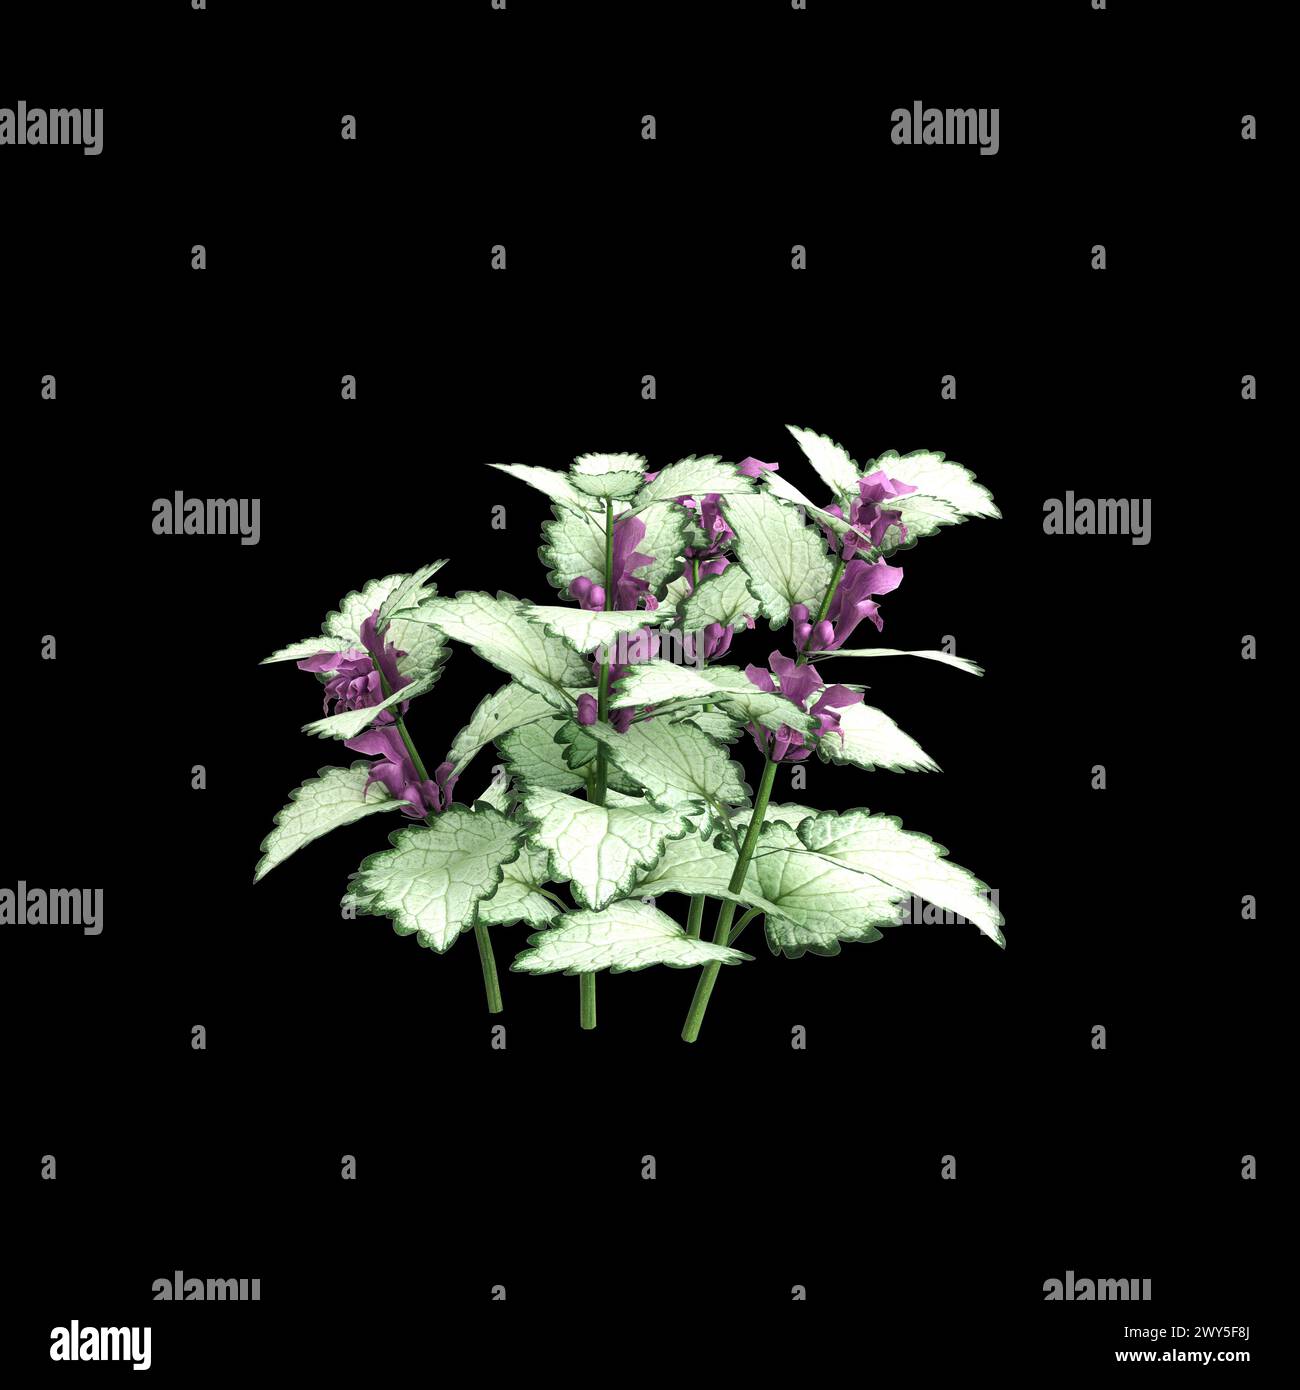 3d illustration of Lamium maculatum bush isolated on black background Stock Photo